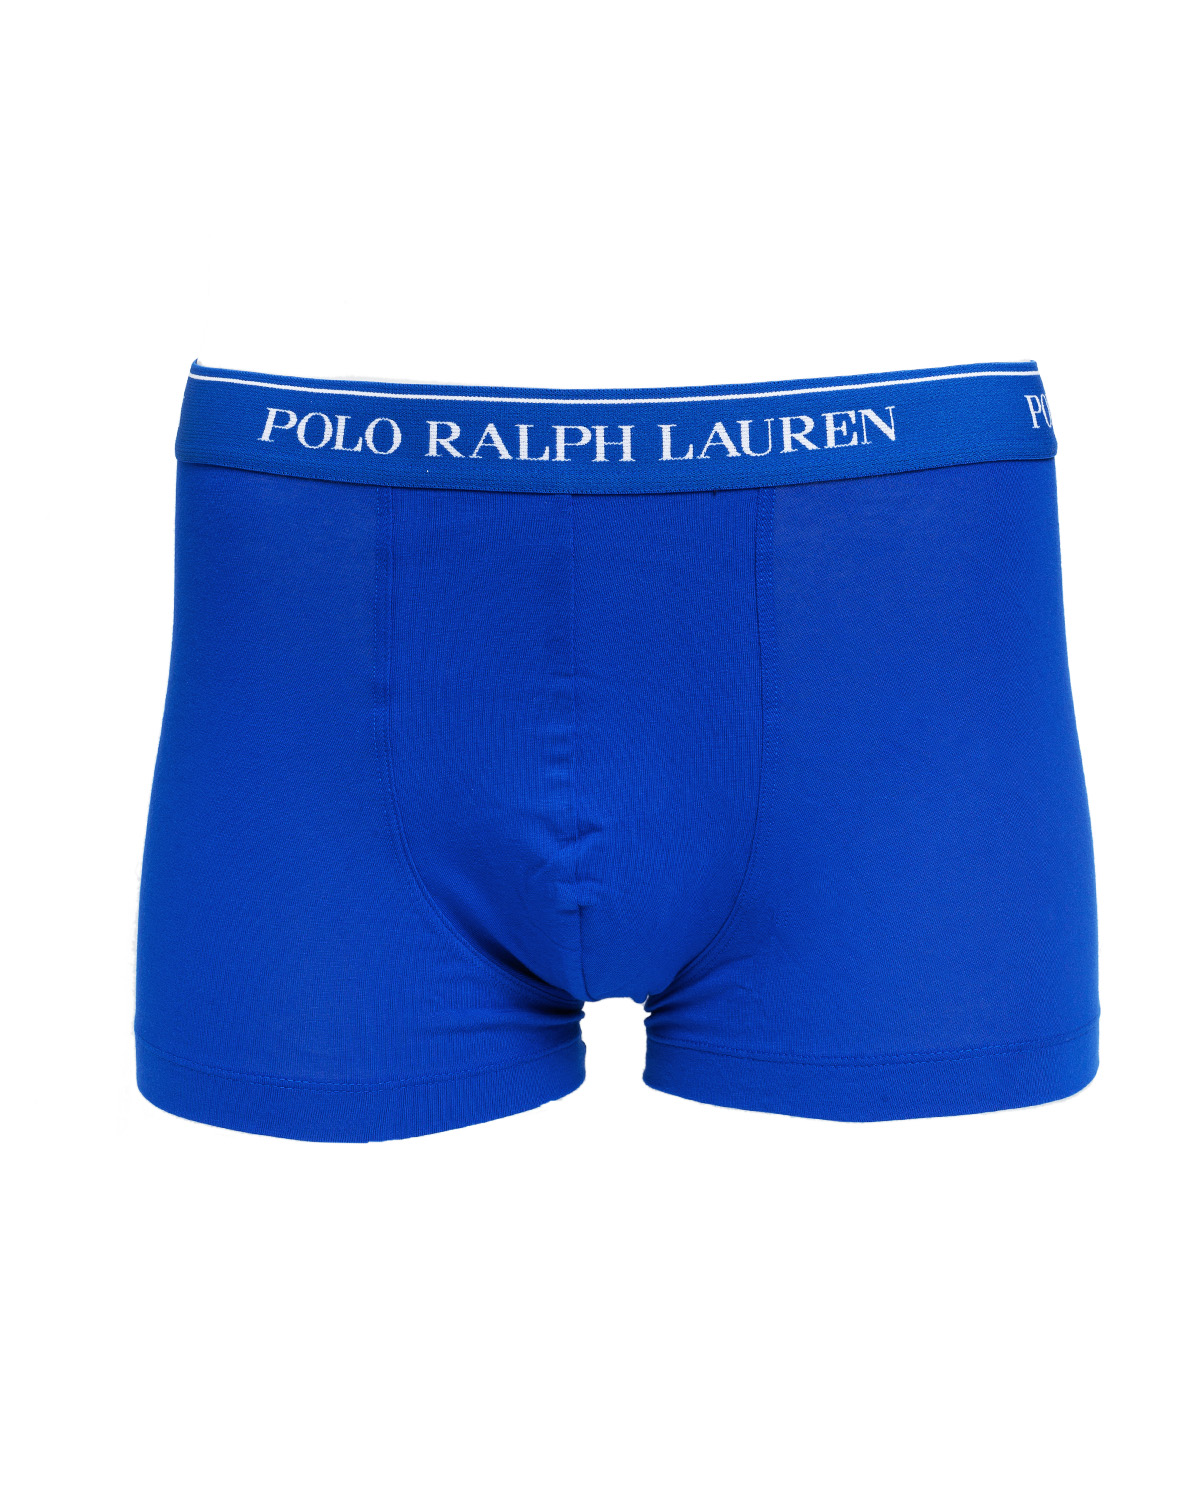 polo ralph lauren classic trunks